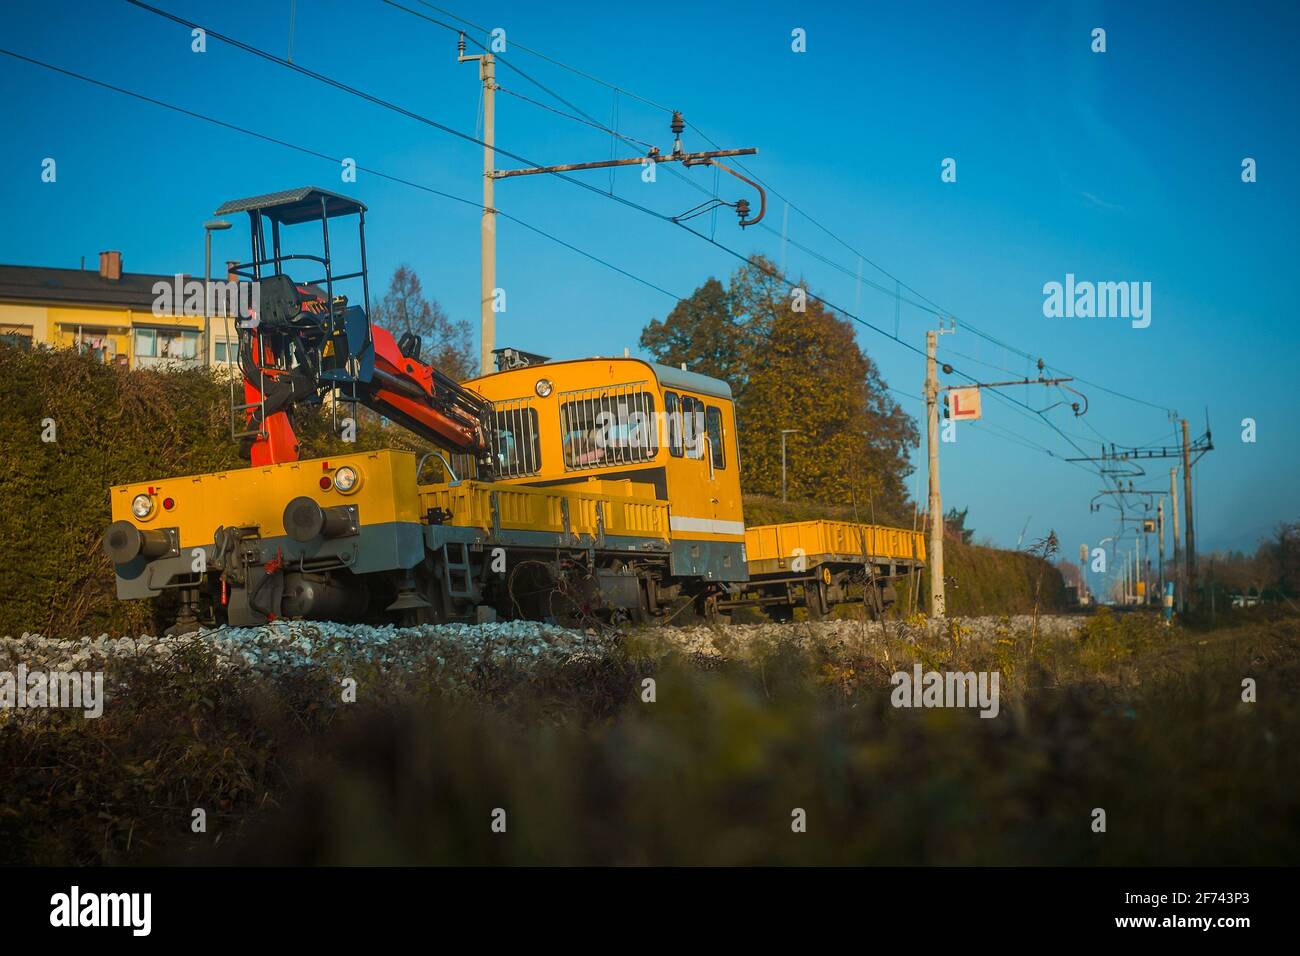 Treno da lavoro giallo su una leggera curva, che si arrossa per fissare i binari del treno. Foto Stock